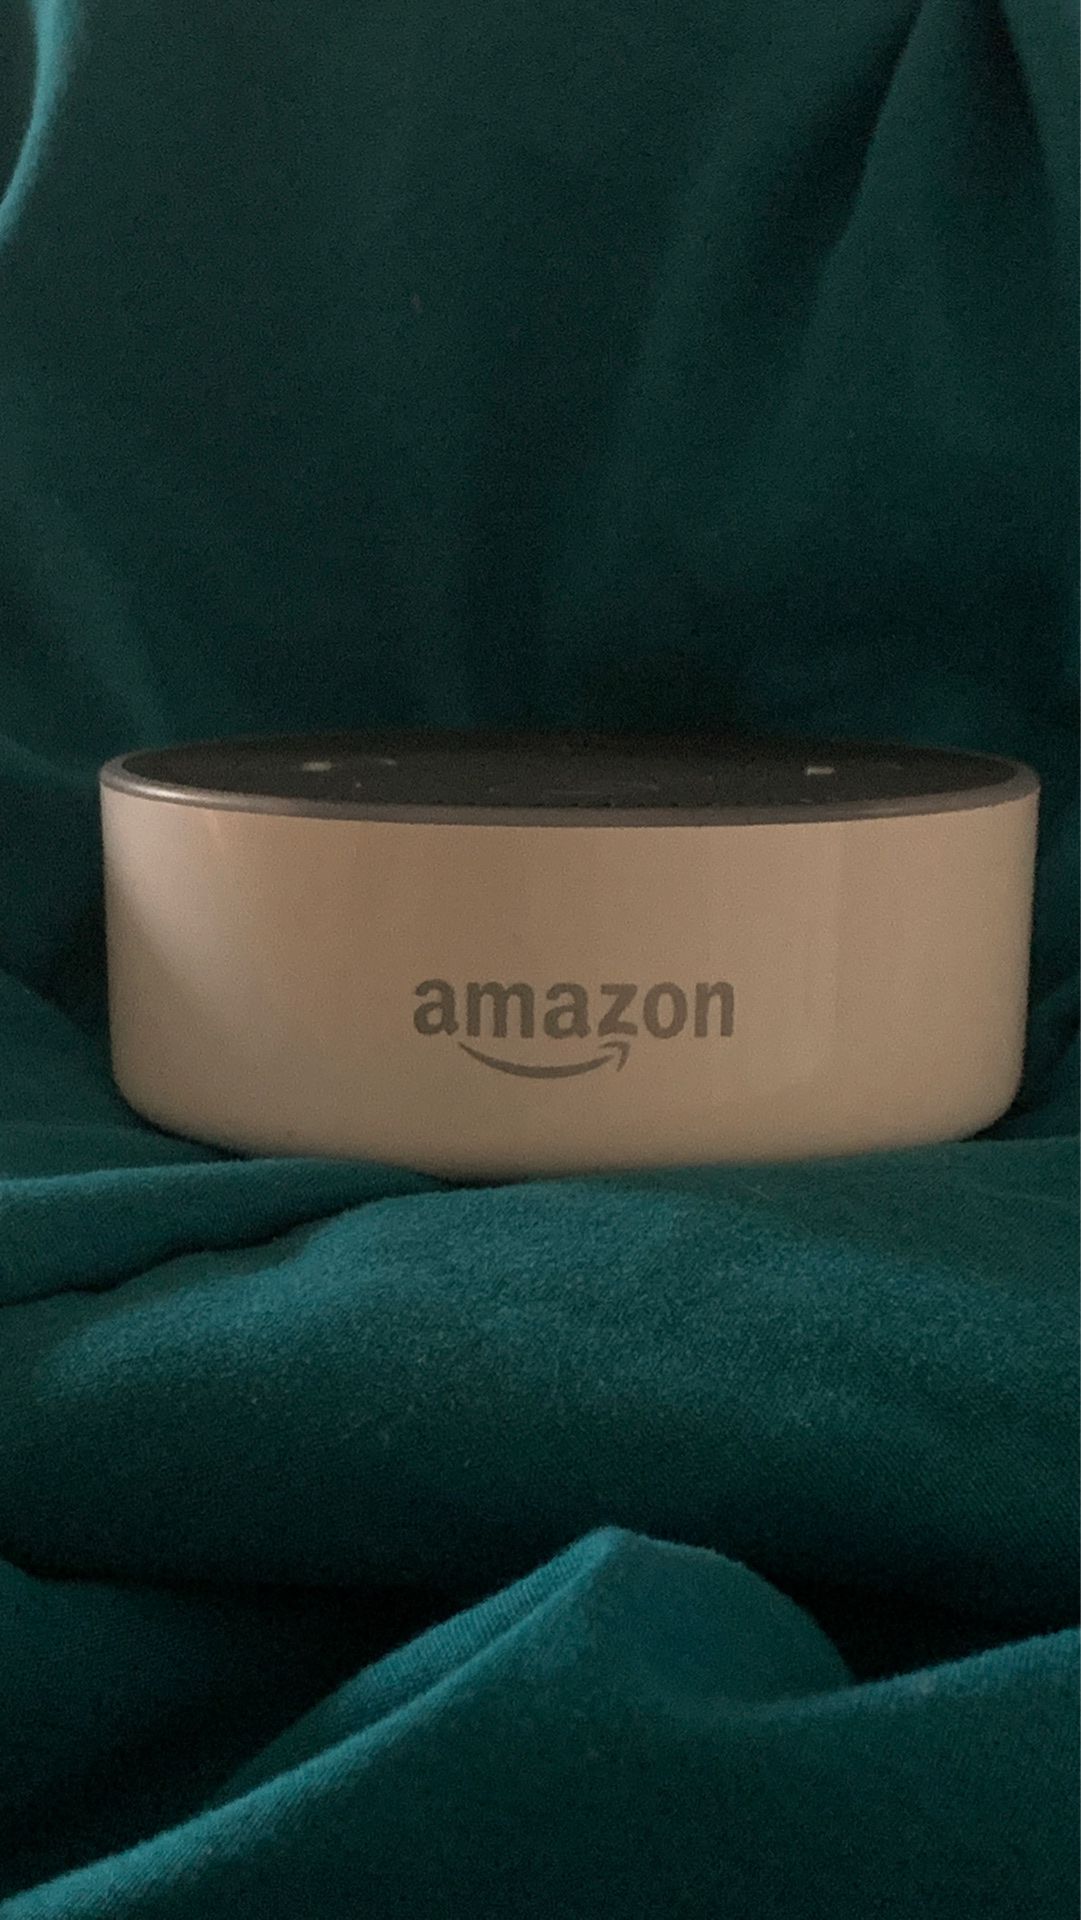 Amazon Echo Dot White